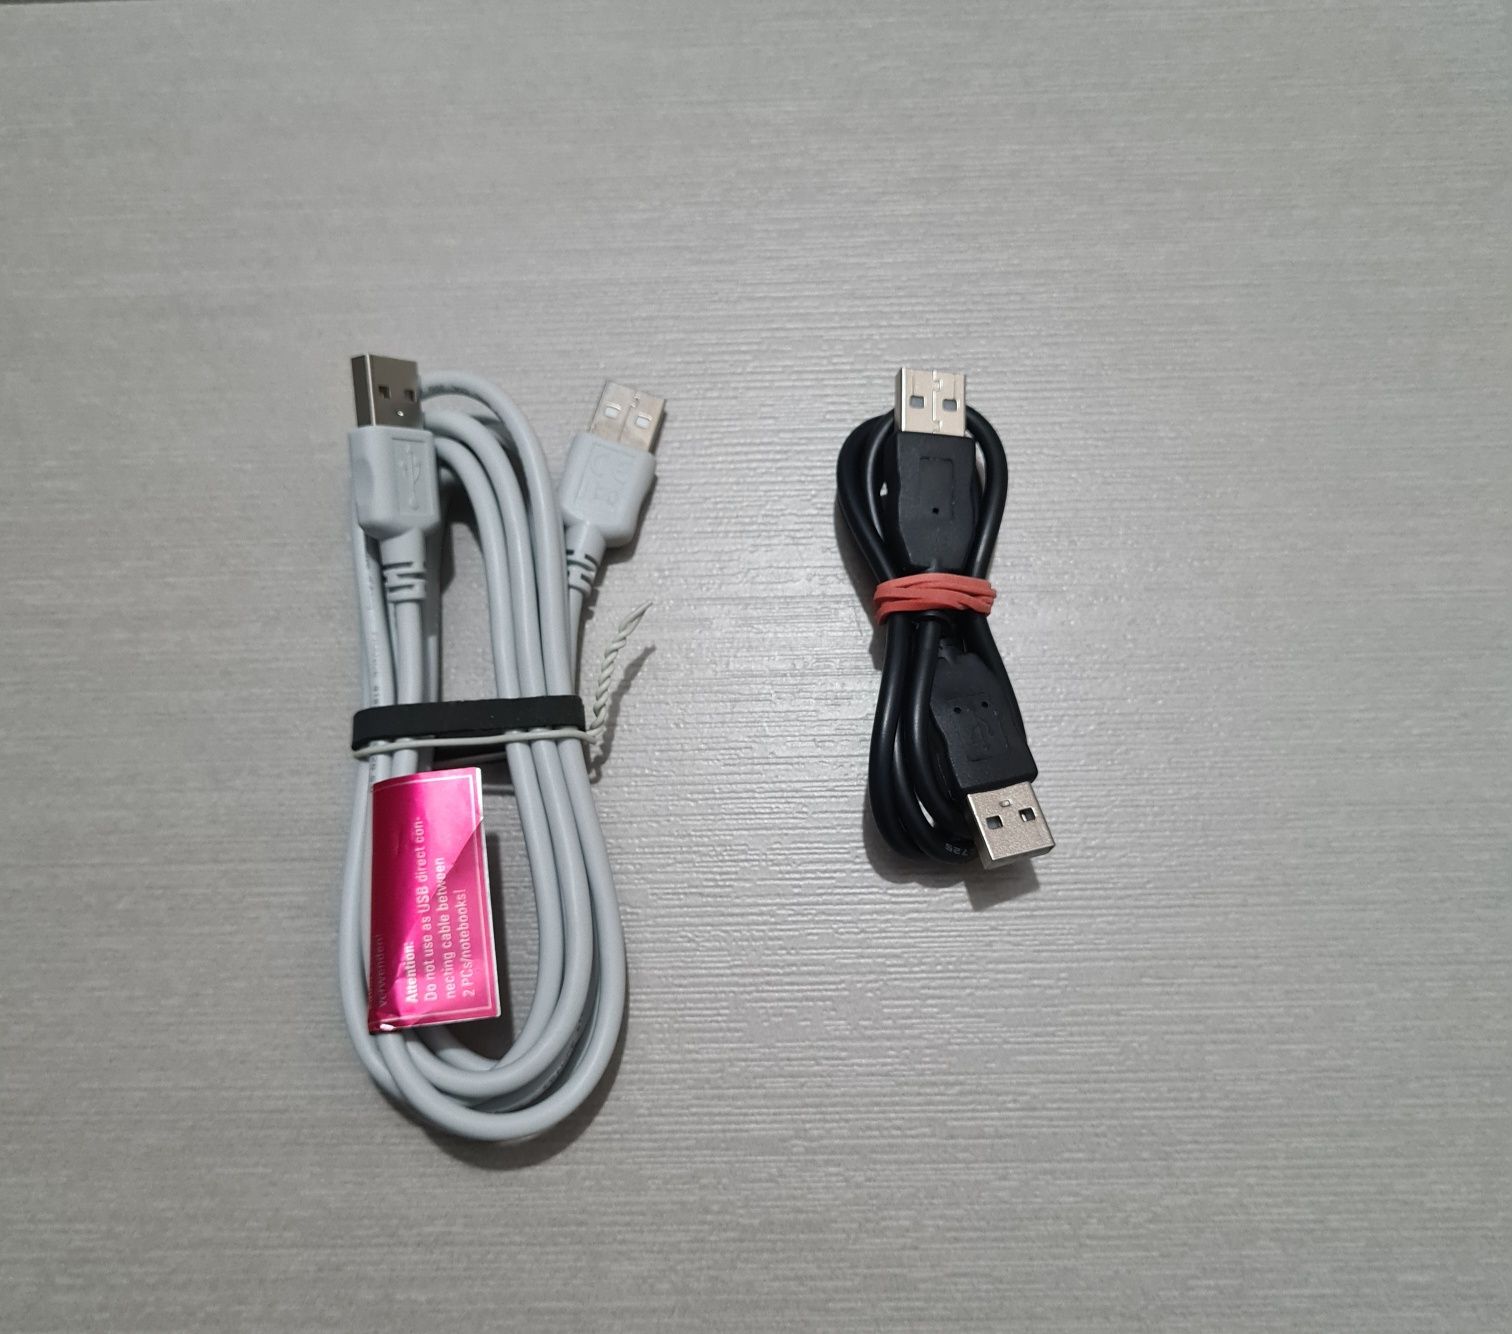 Cablu USB la USB (USB A to USB A), Cablu tip Y USB A la 2 x USB A